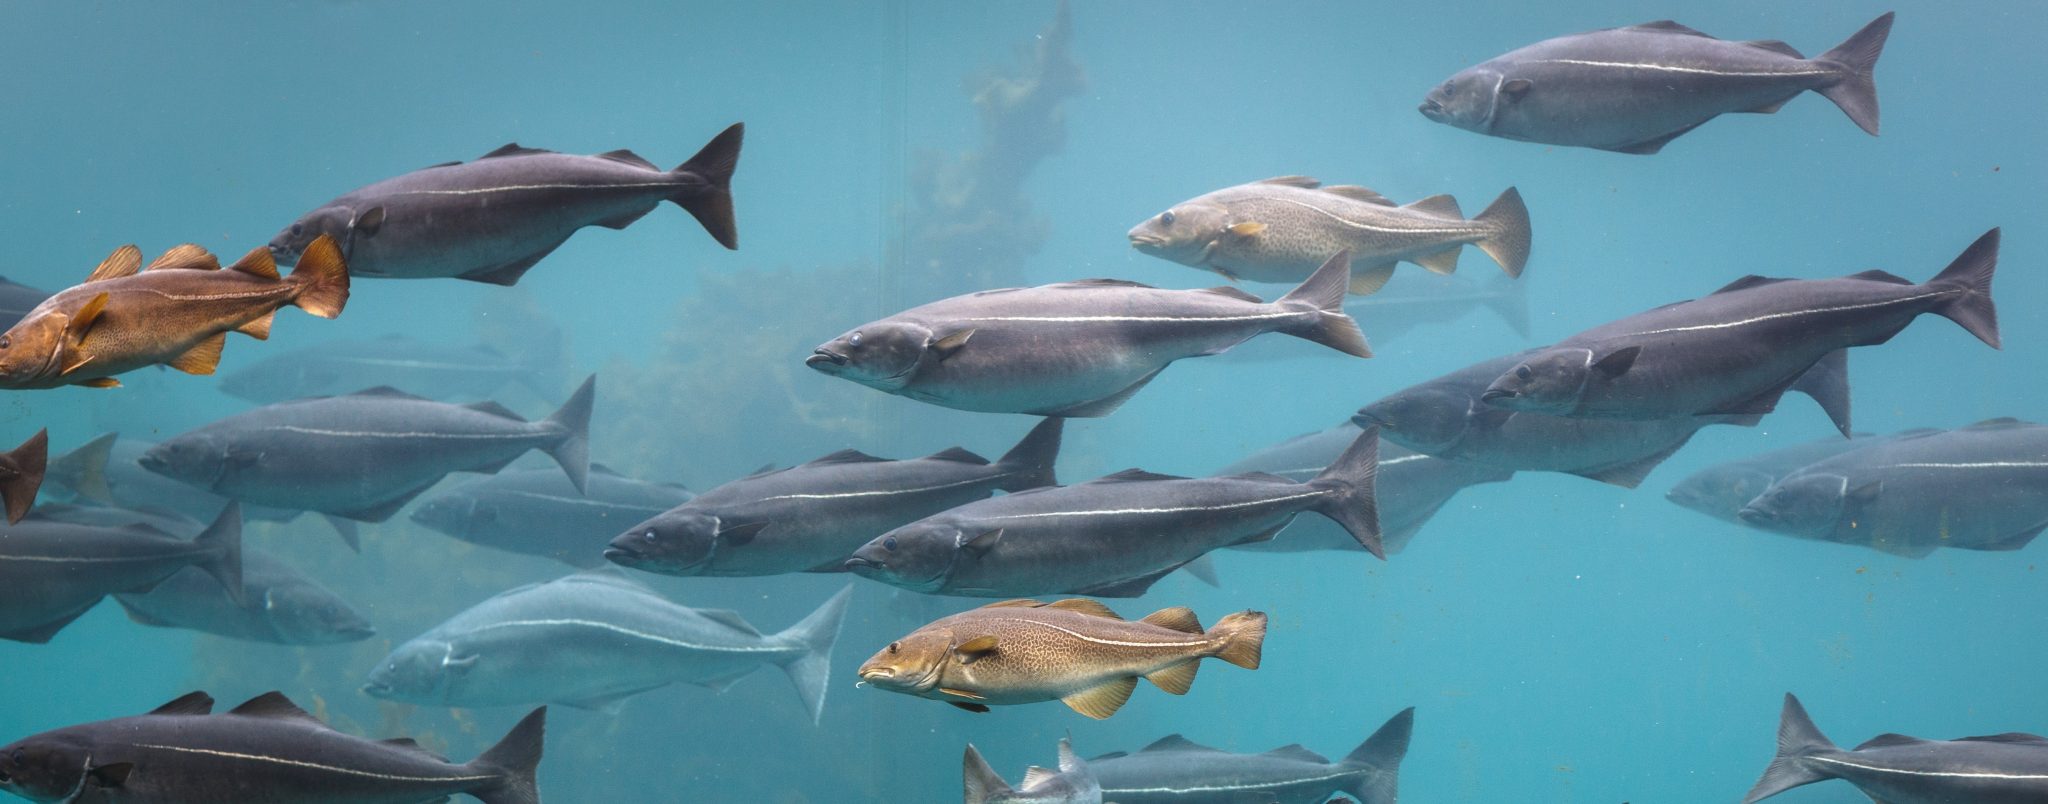 sjømat - bildet av masse fisker under vann